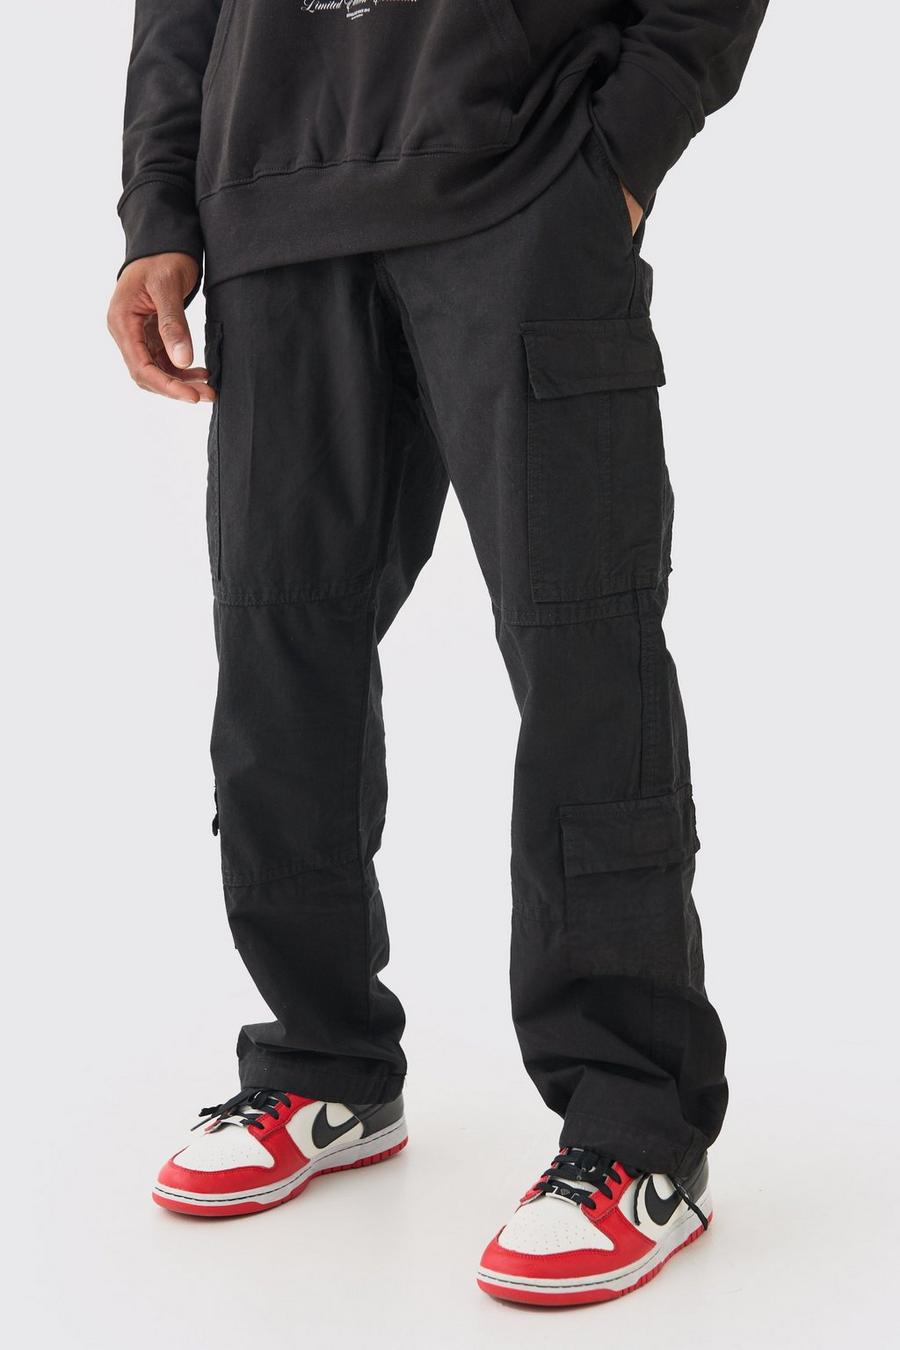 Pantalon cargo ample à poches multiples, Black